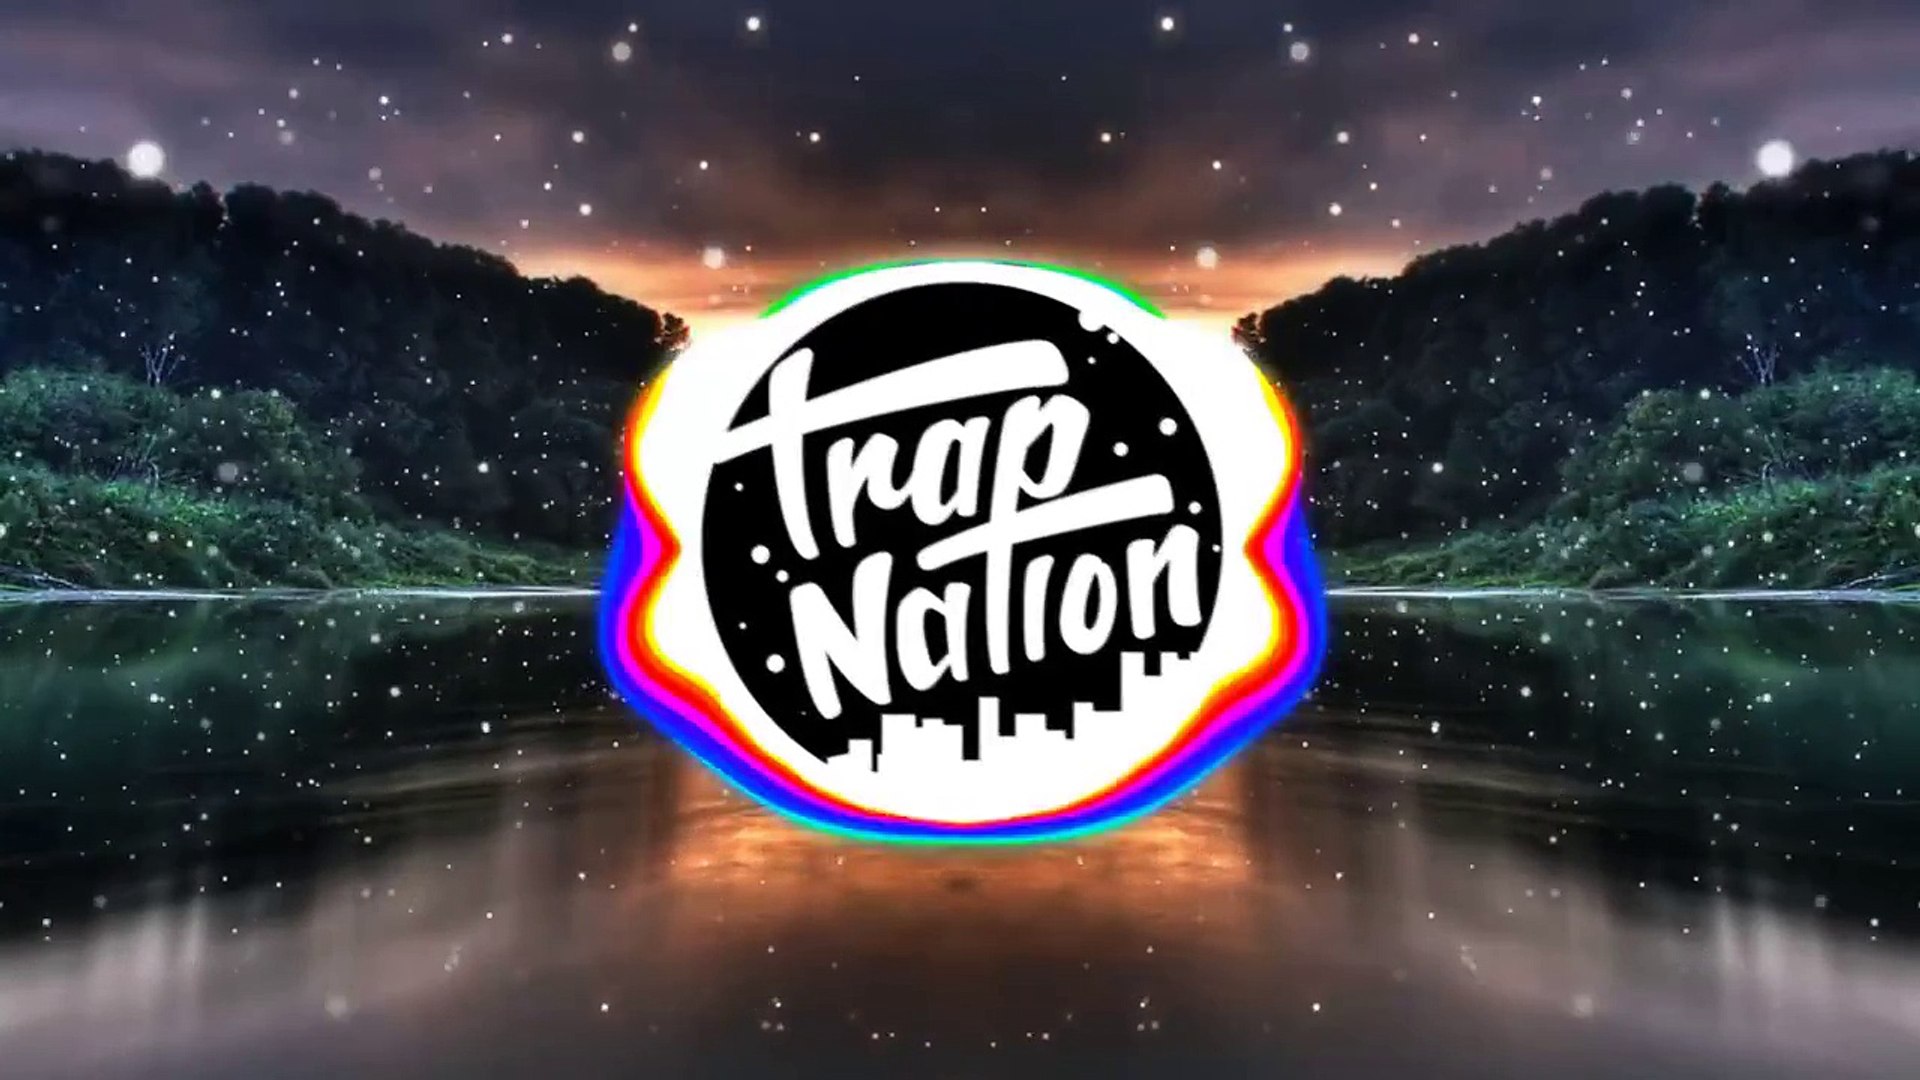 Trap Nation - HD Wallpaper 